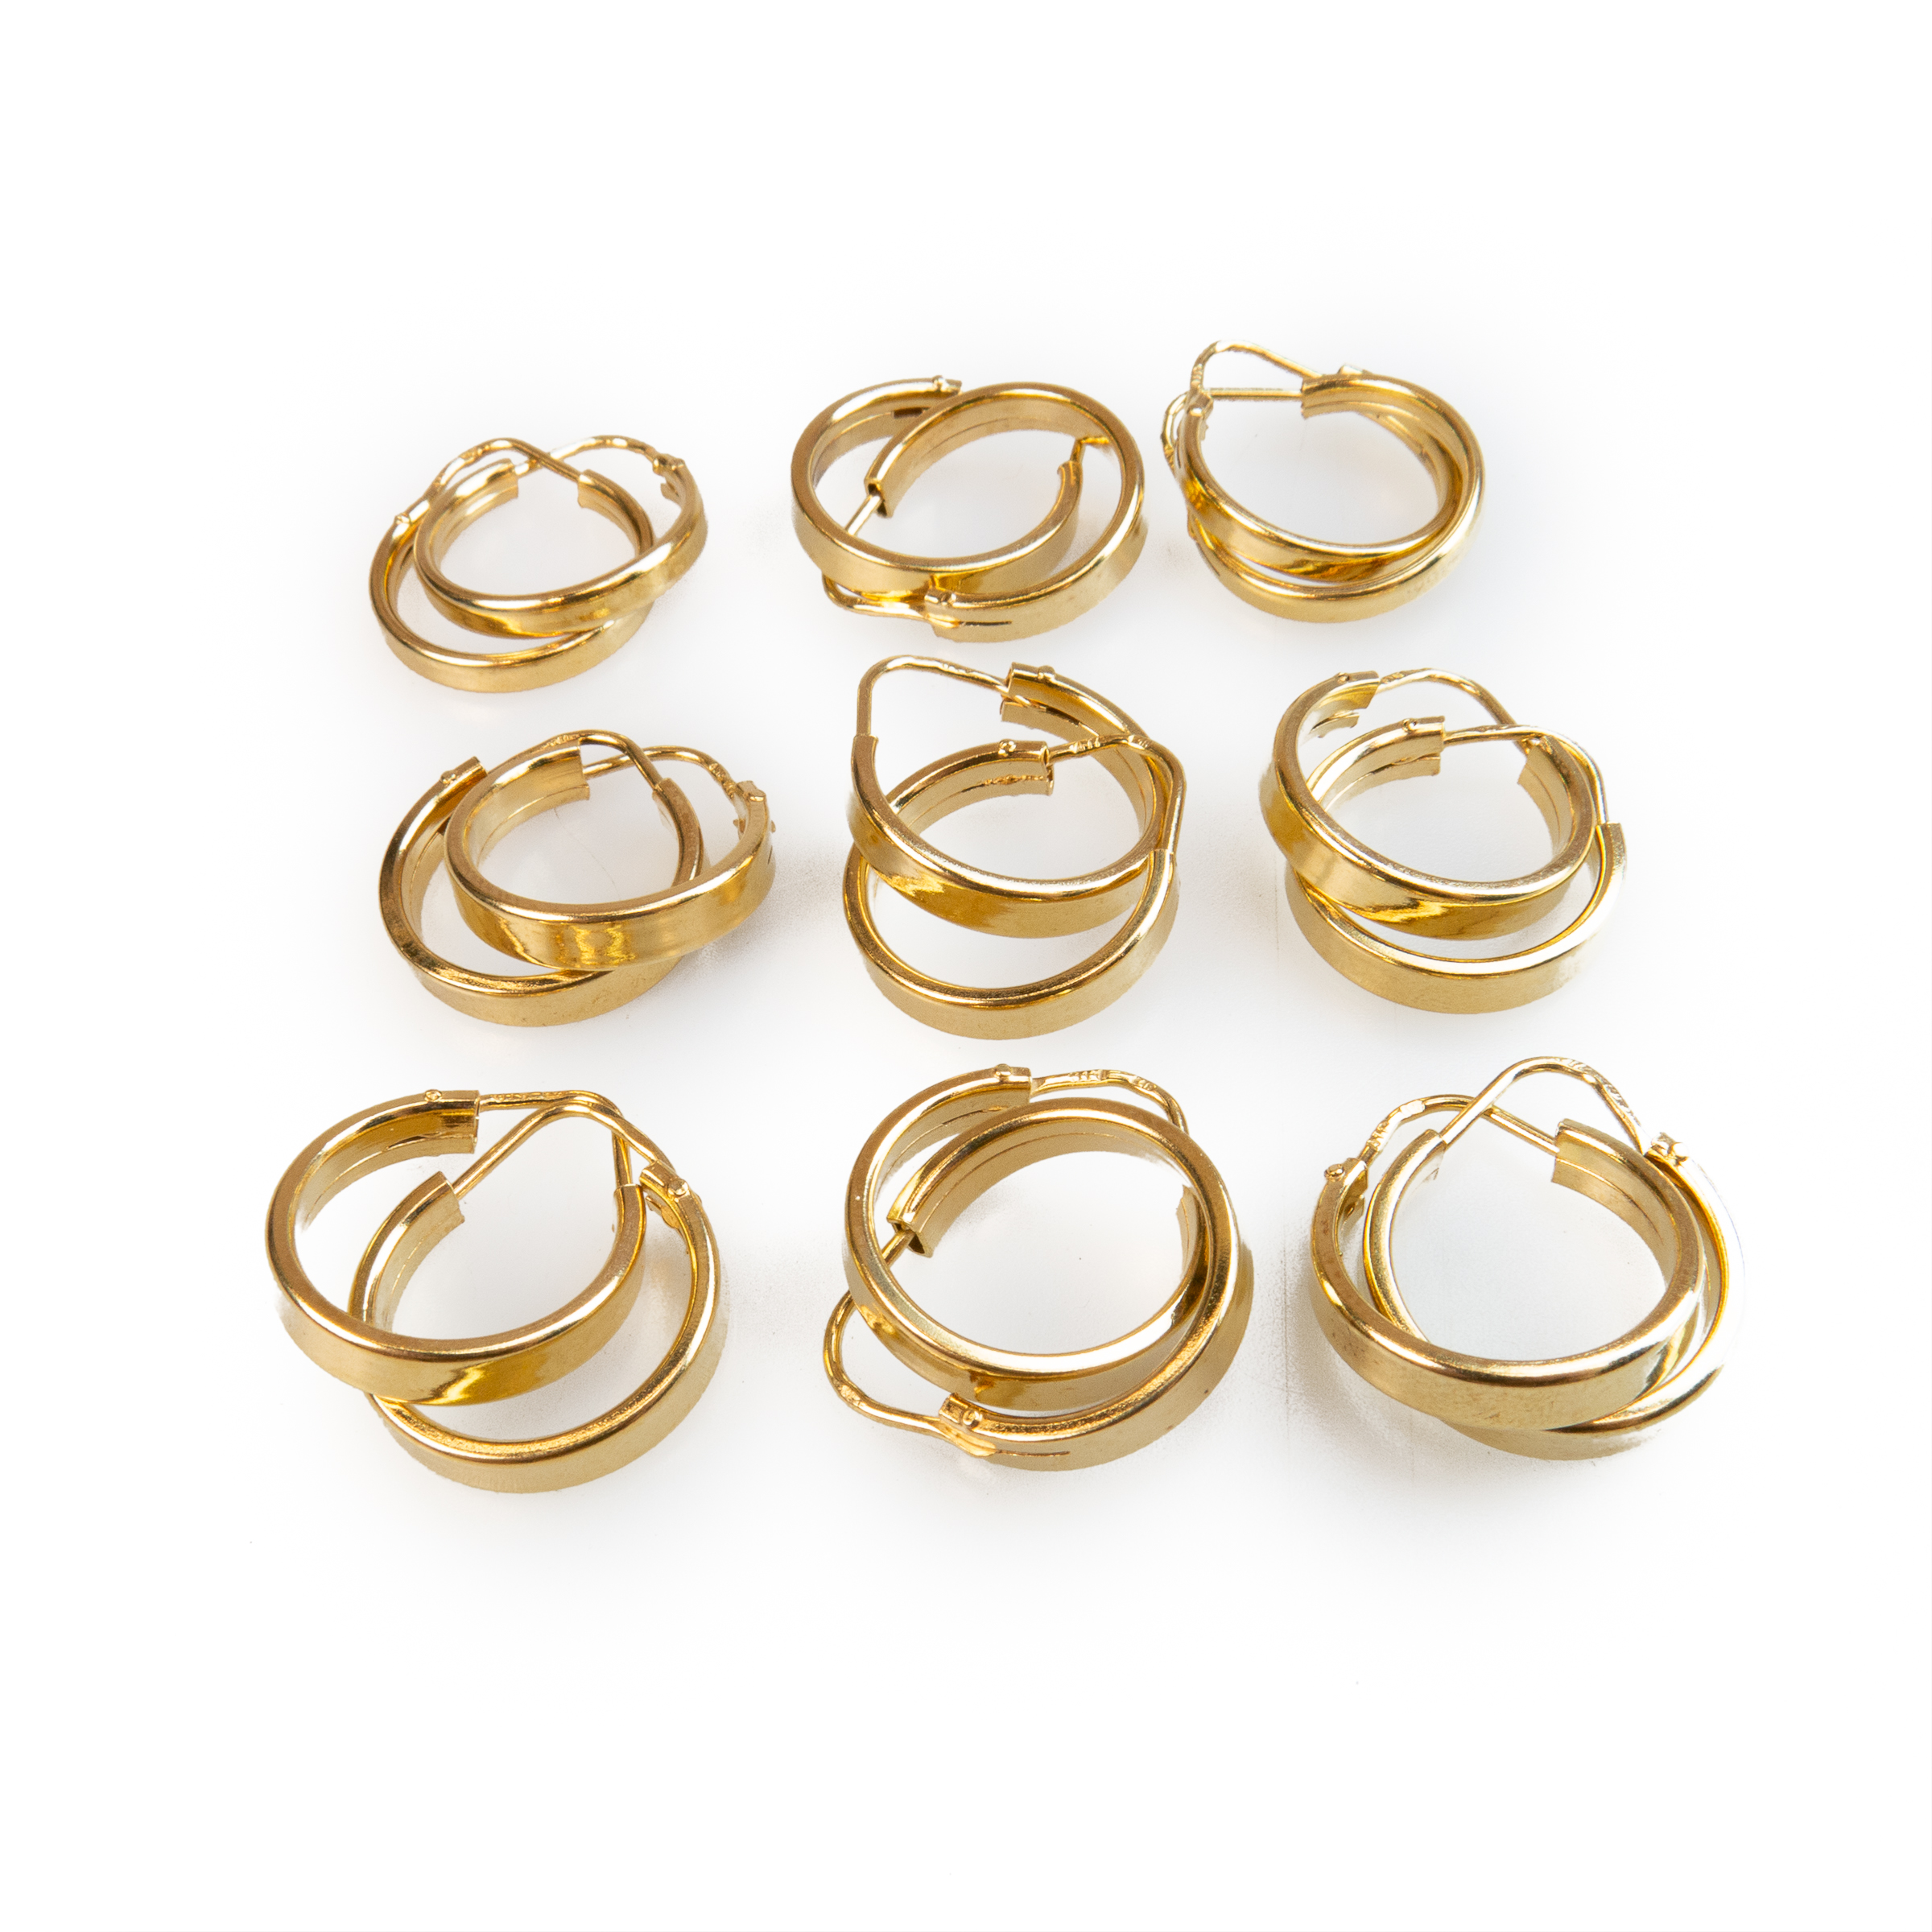 9 x Pairs Of 18k Yellow Gold Hoop Earrings